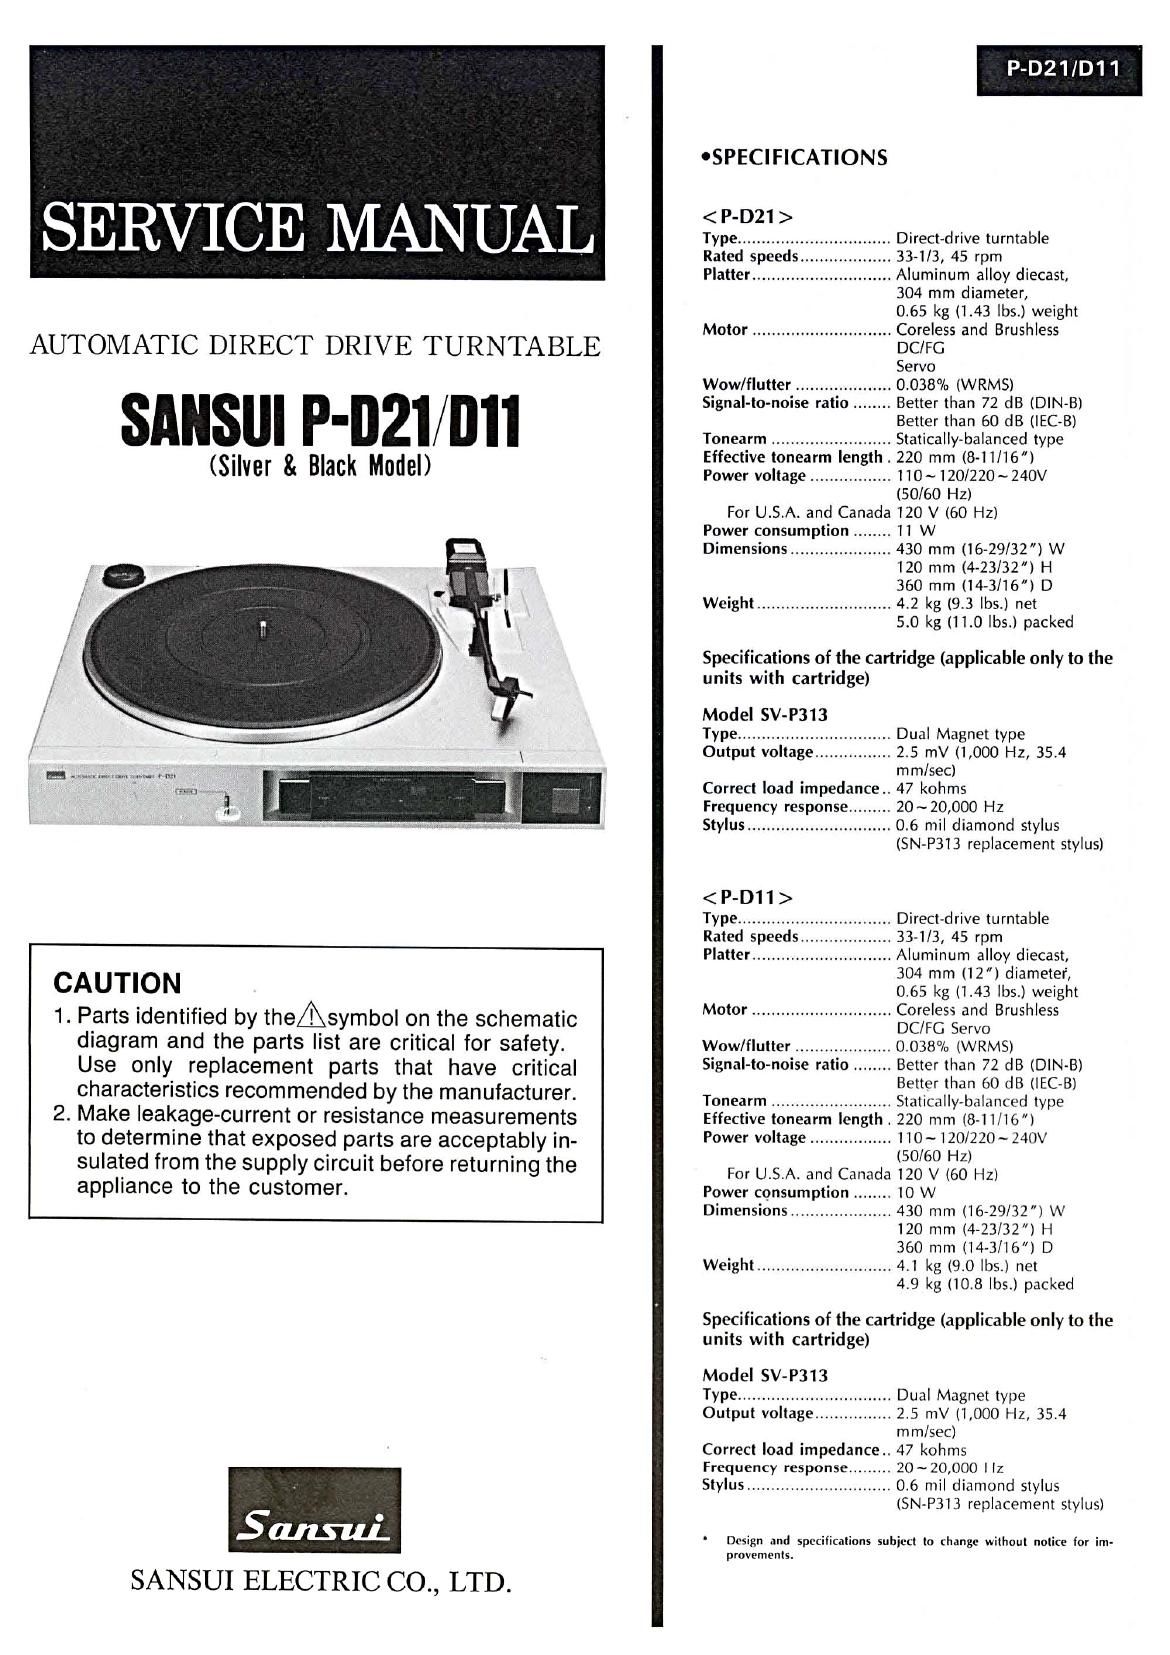 Sansui P D21 Service Manual